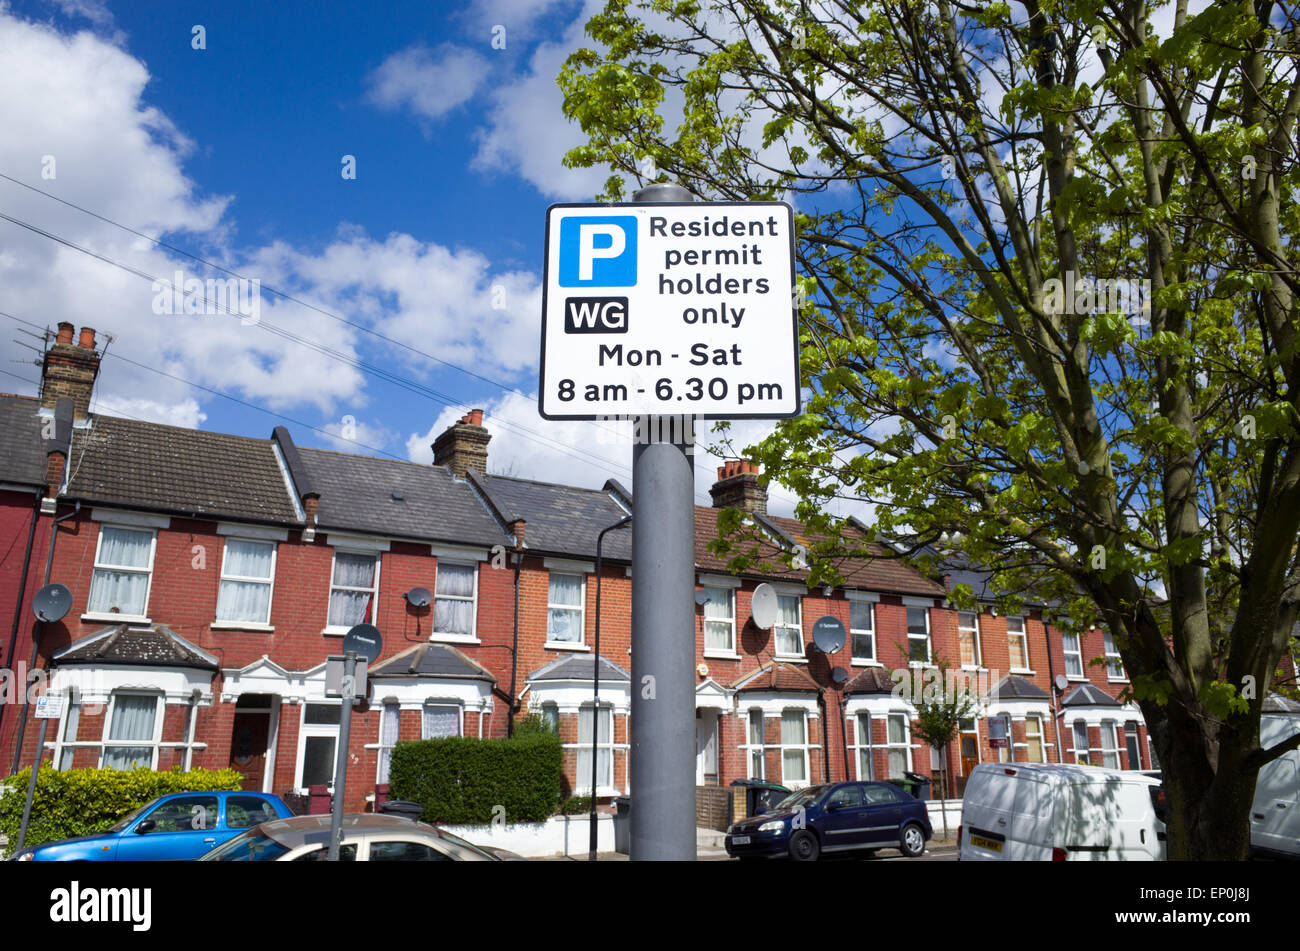 Les détenteurs de permis de résident parking sign, Haringey, London, England, UK Banque D'Images